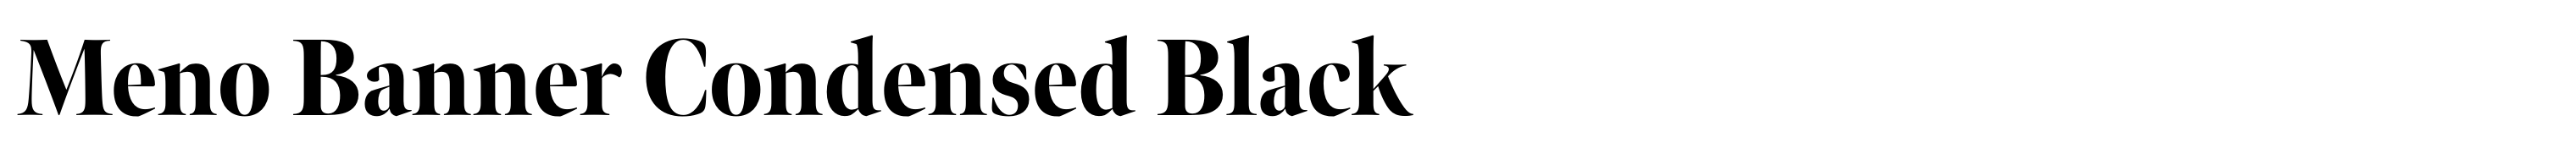 Meno Banner Condensed Black